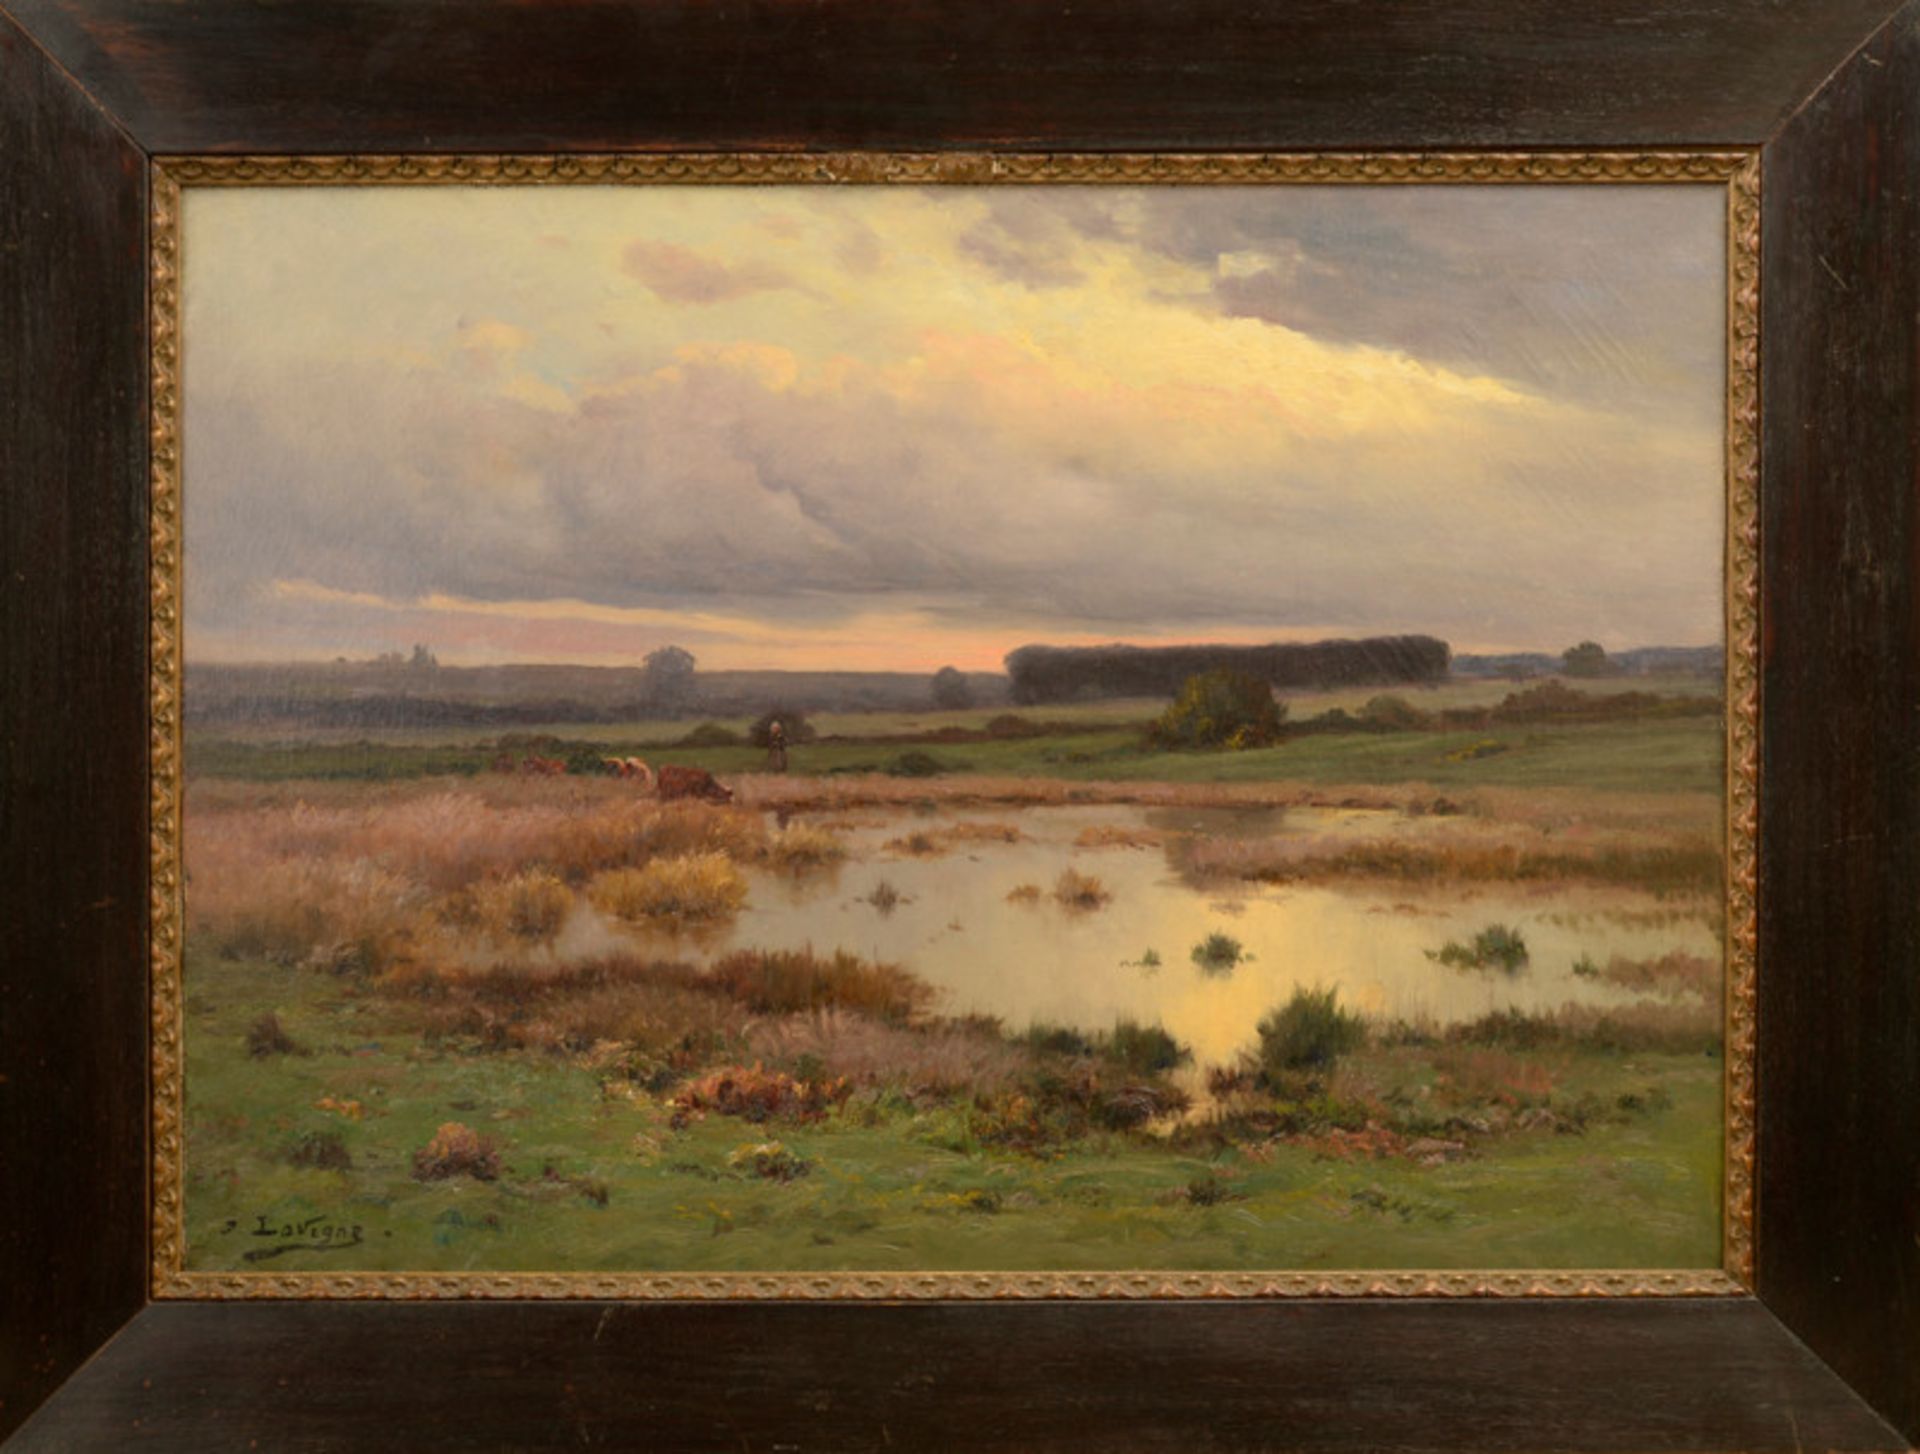 Emile Joseph Lavigne (1827 - 1875) - Öl auf Leinwand, "Hirtin mit ihren Rindern unter morgenrotem